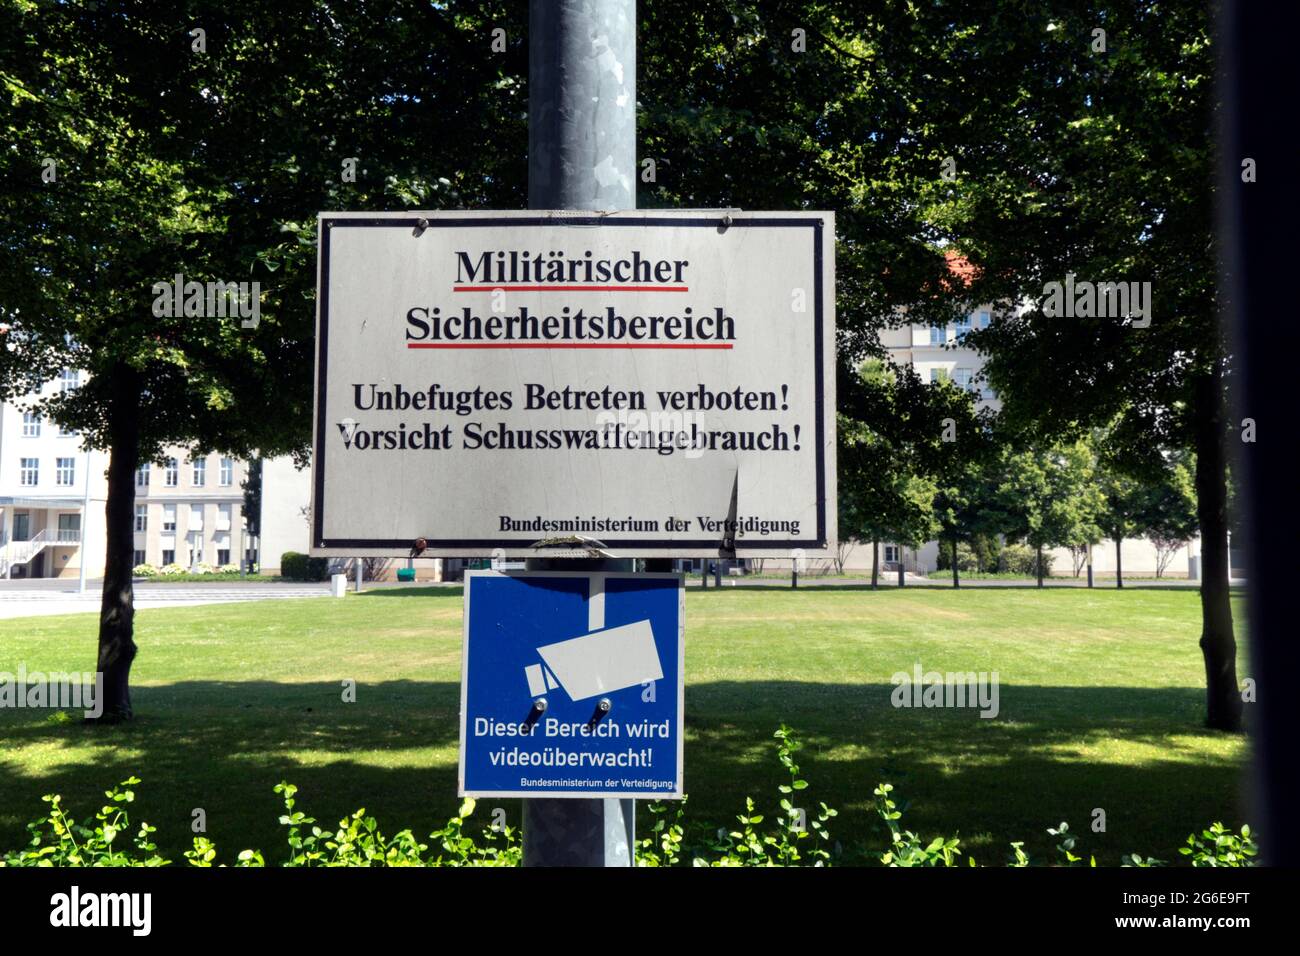 Warning sign with the inscription Militaerischer Sicherheitsbereich, Vorsicht Schusswaffengebrauch, Federal Ministry of Defence, Berlin, Germany Stock Photo